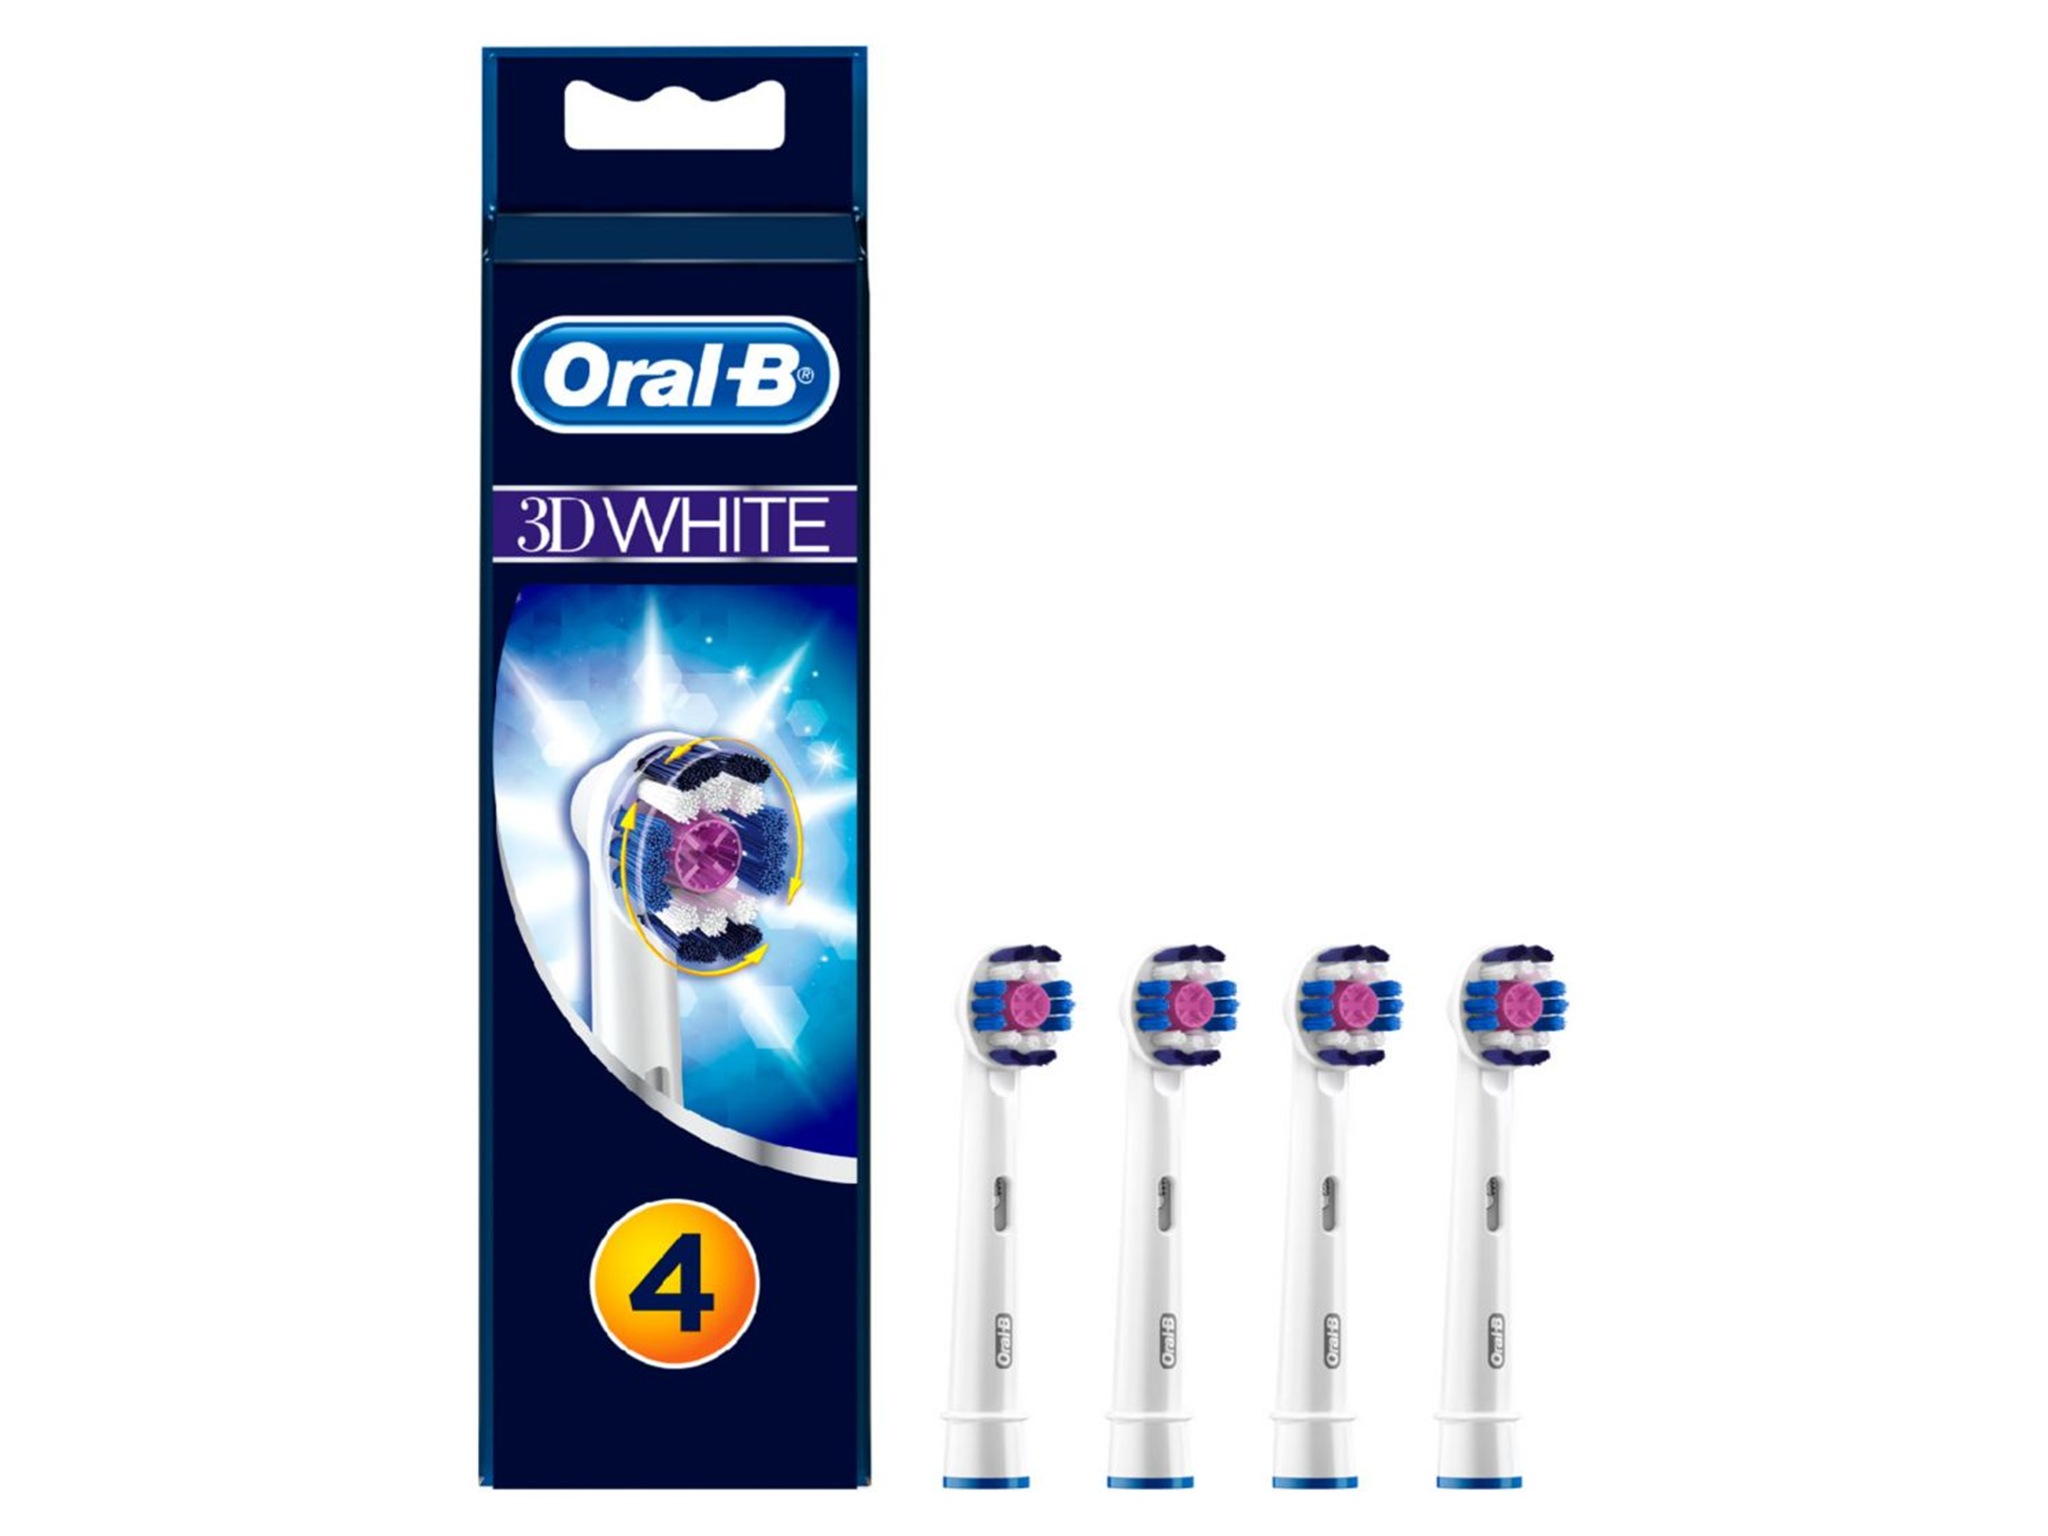 oral-b-toothbrush-refills